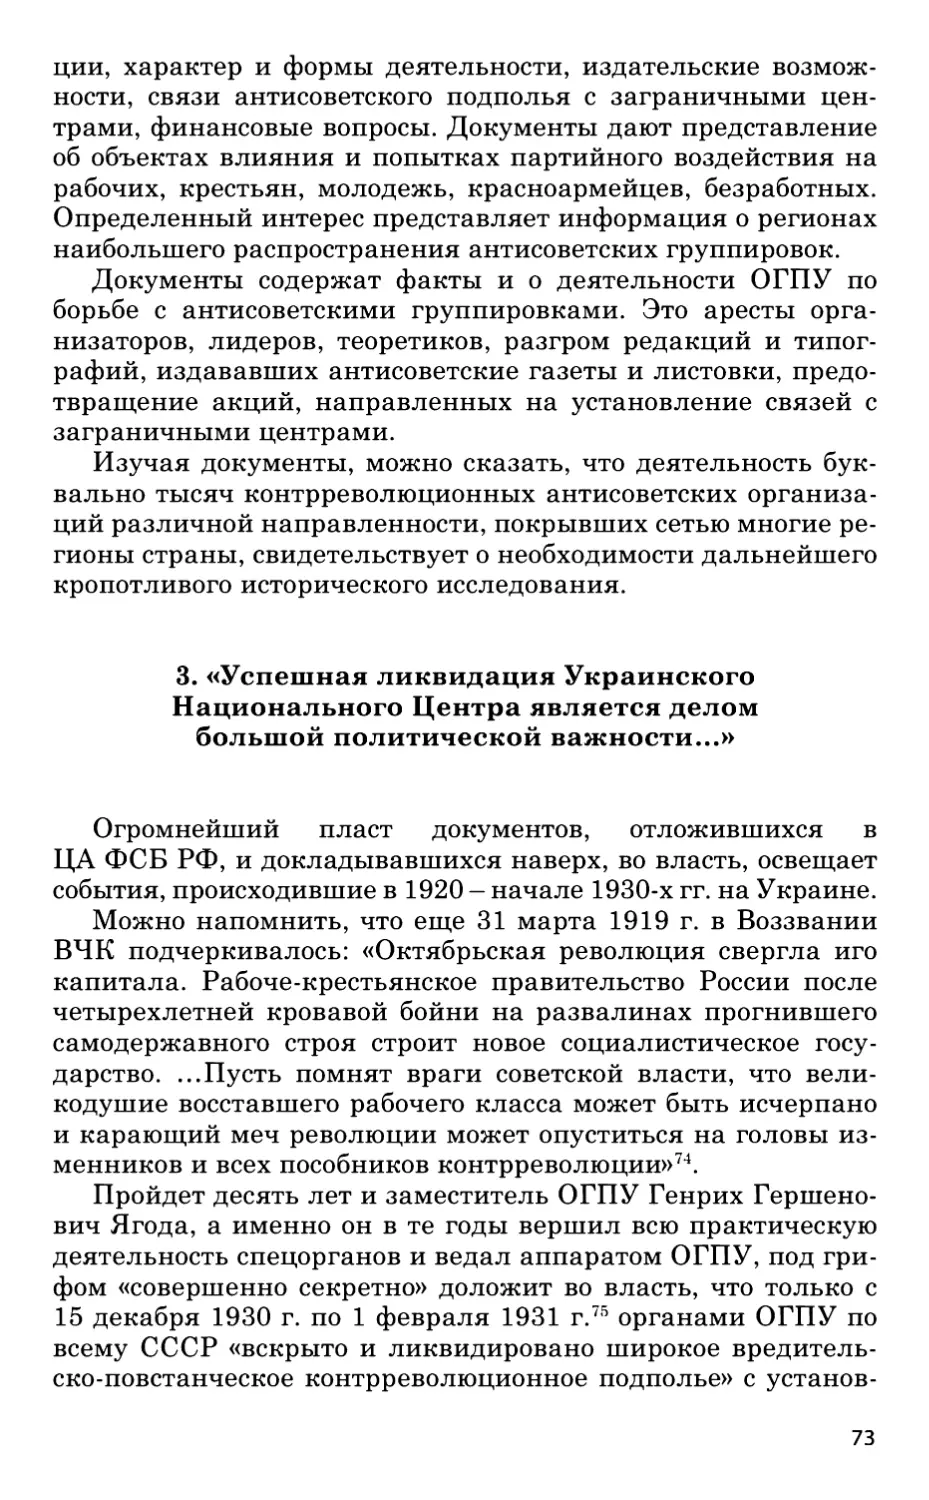 3. «Успешная ликвидация Украинского Национального Центра является делом большой политической важности...»